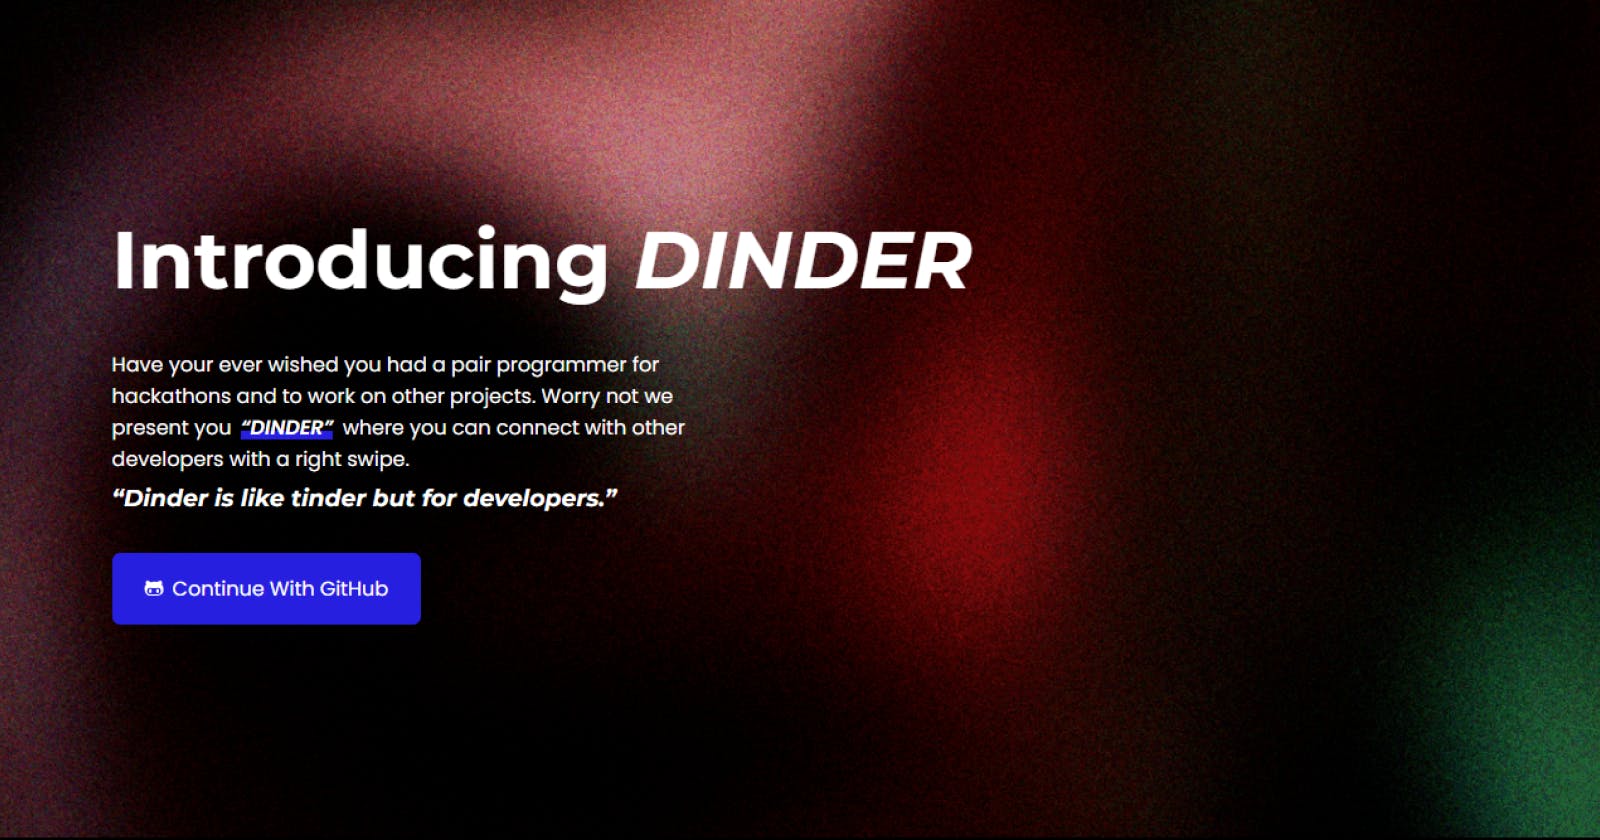 Dinder: A Tinder For Developers.